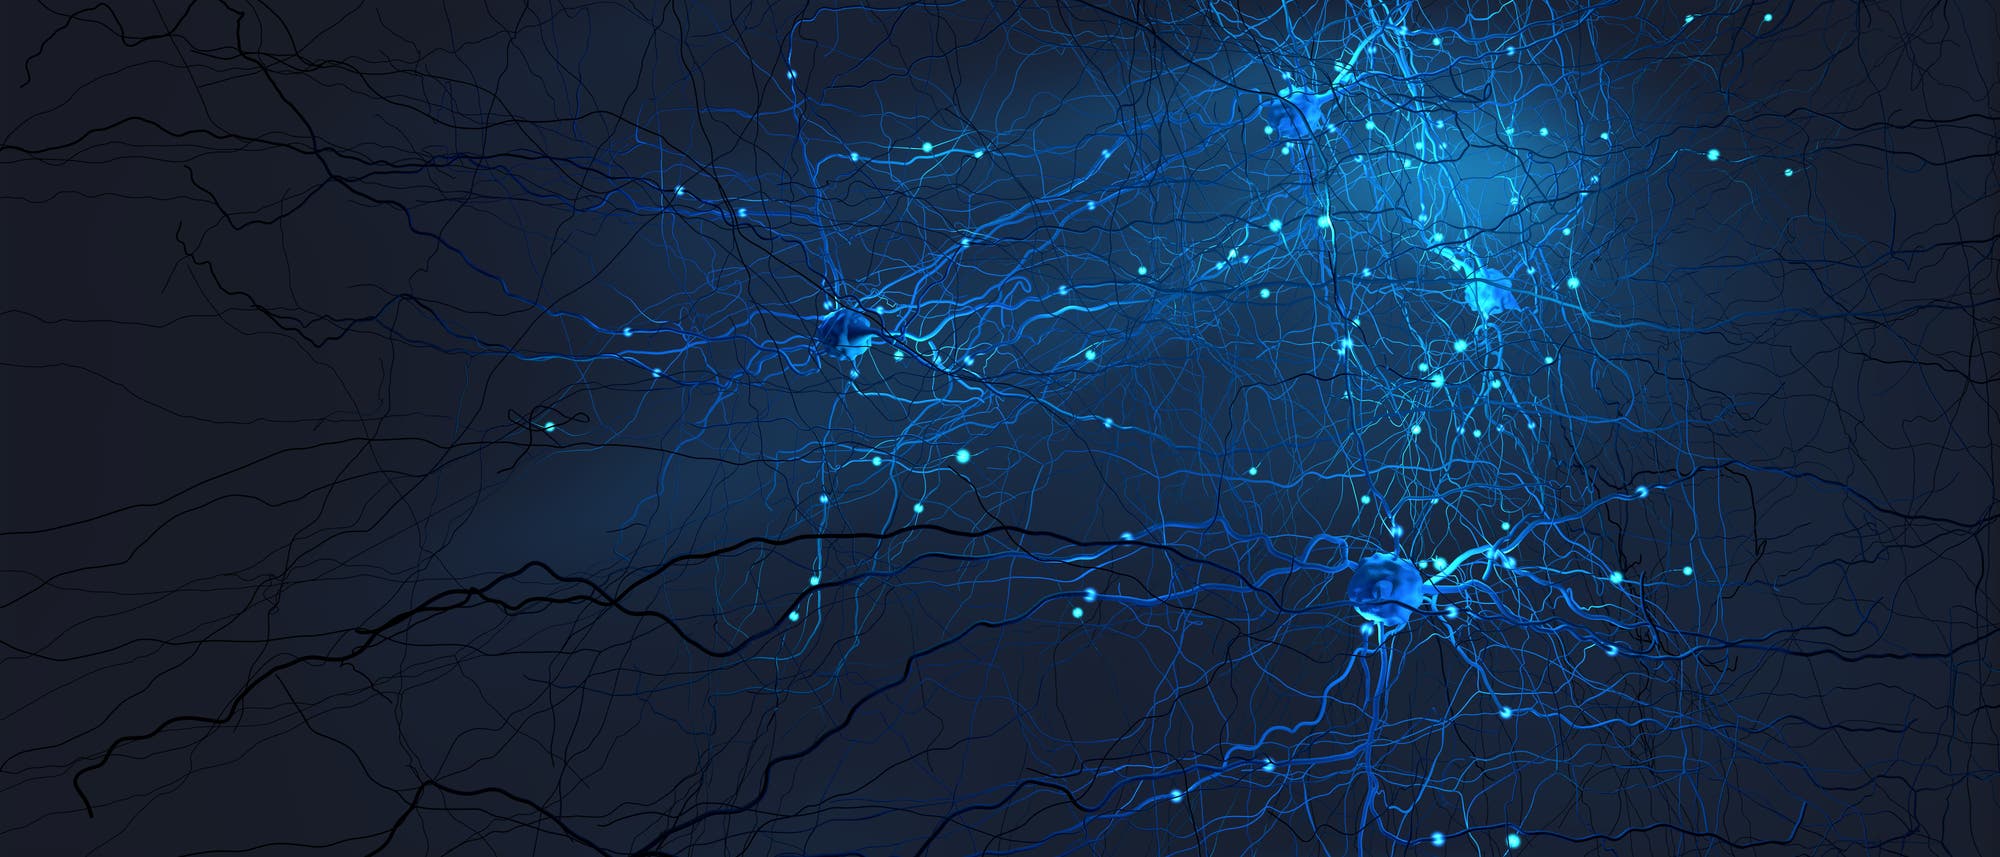 Blaue Neurone vor schwarzem Hintergrund